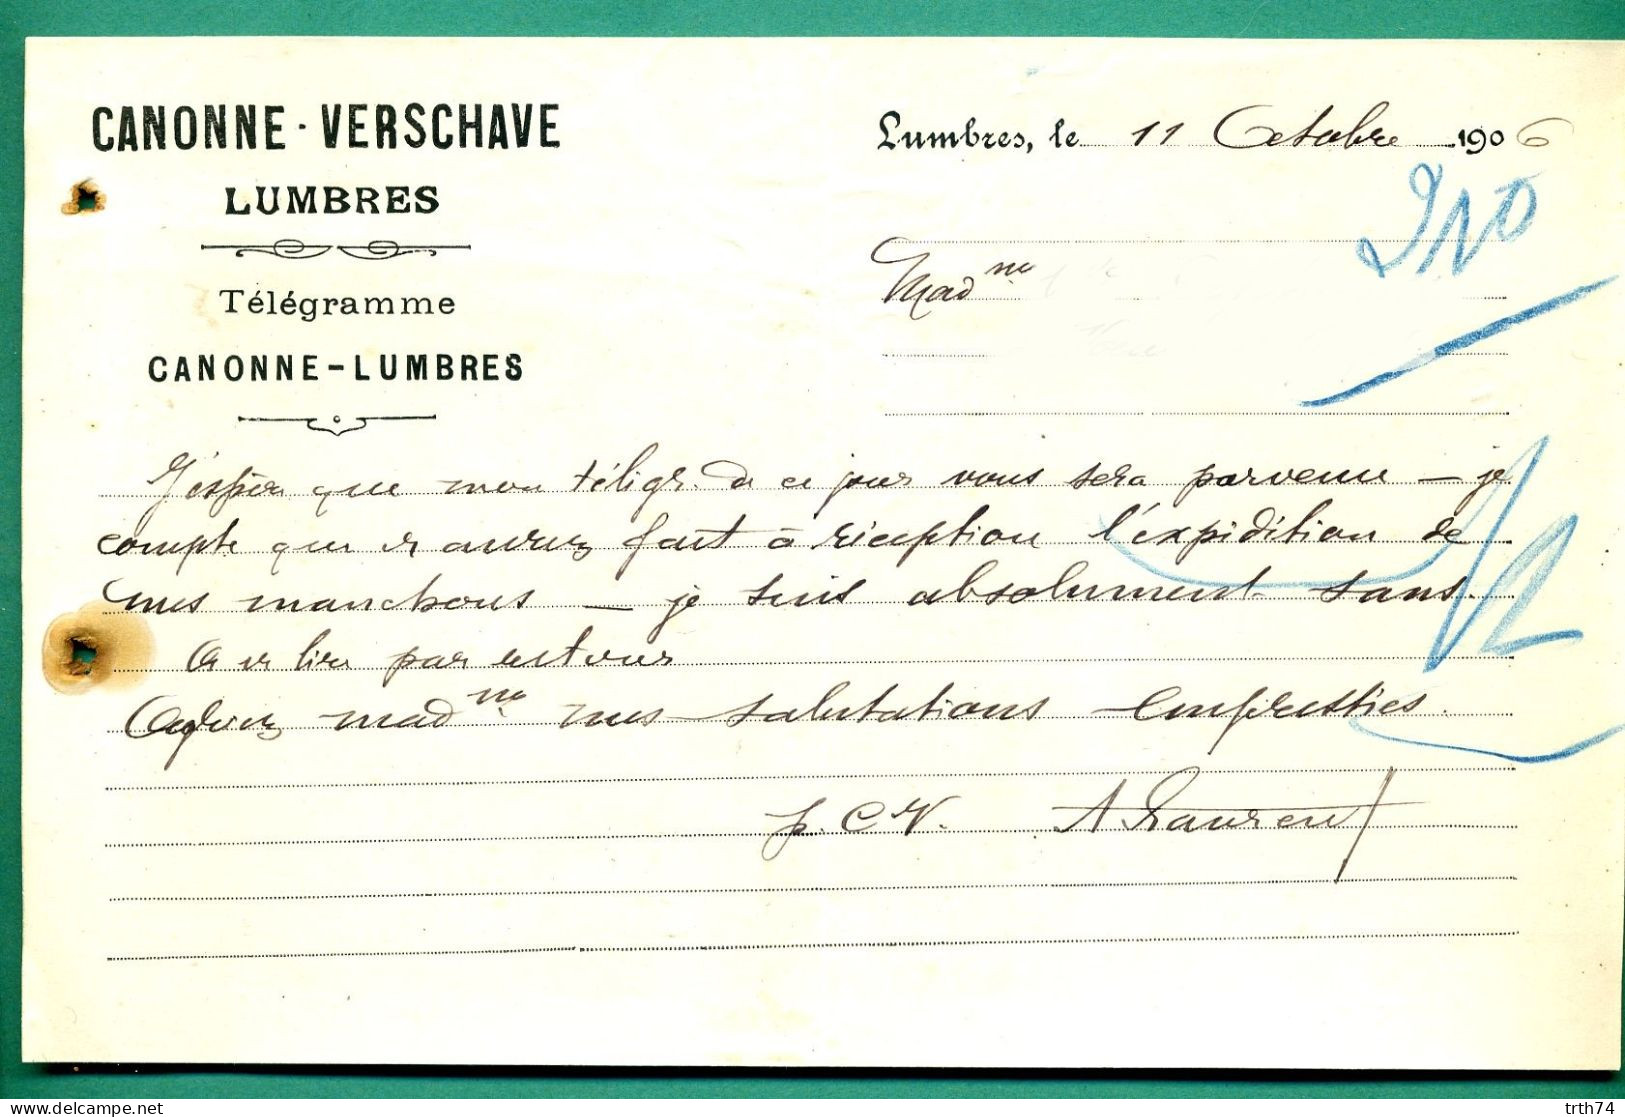 62 Lumbres Canonne Verschare 11 Octobre 1906 - Drukkerij & Papieren